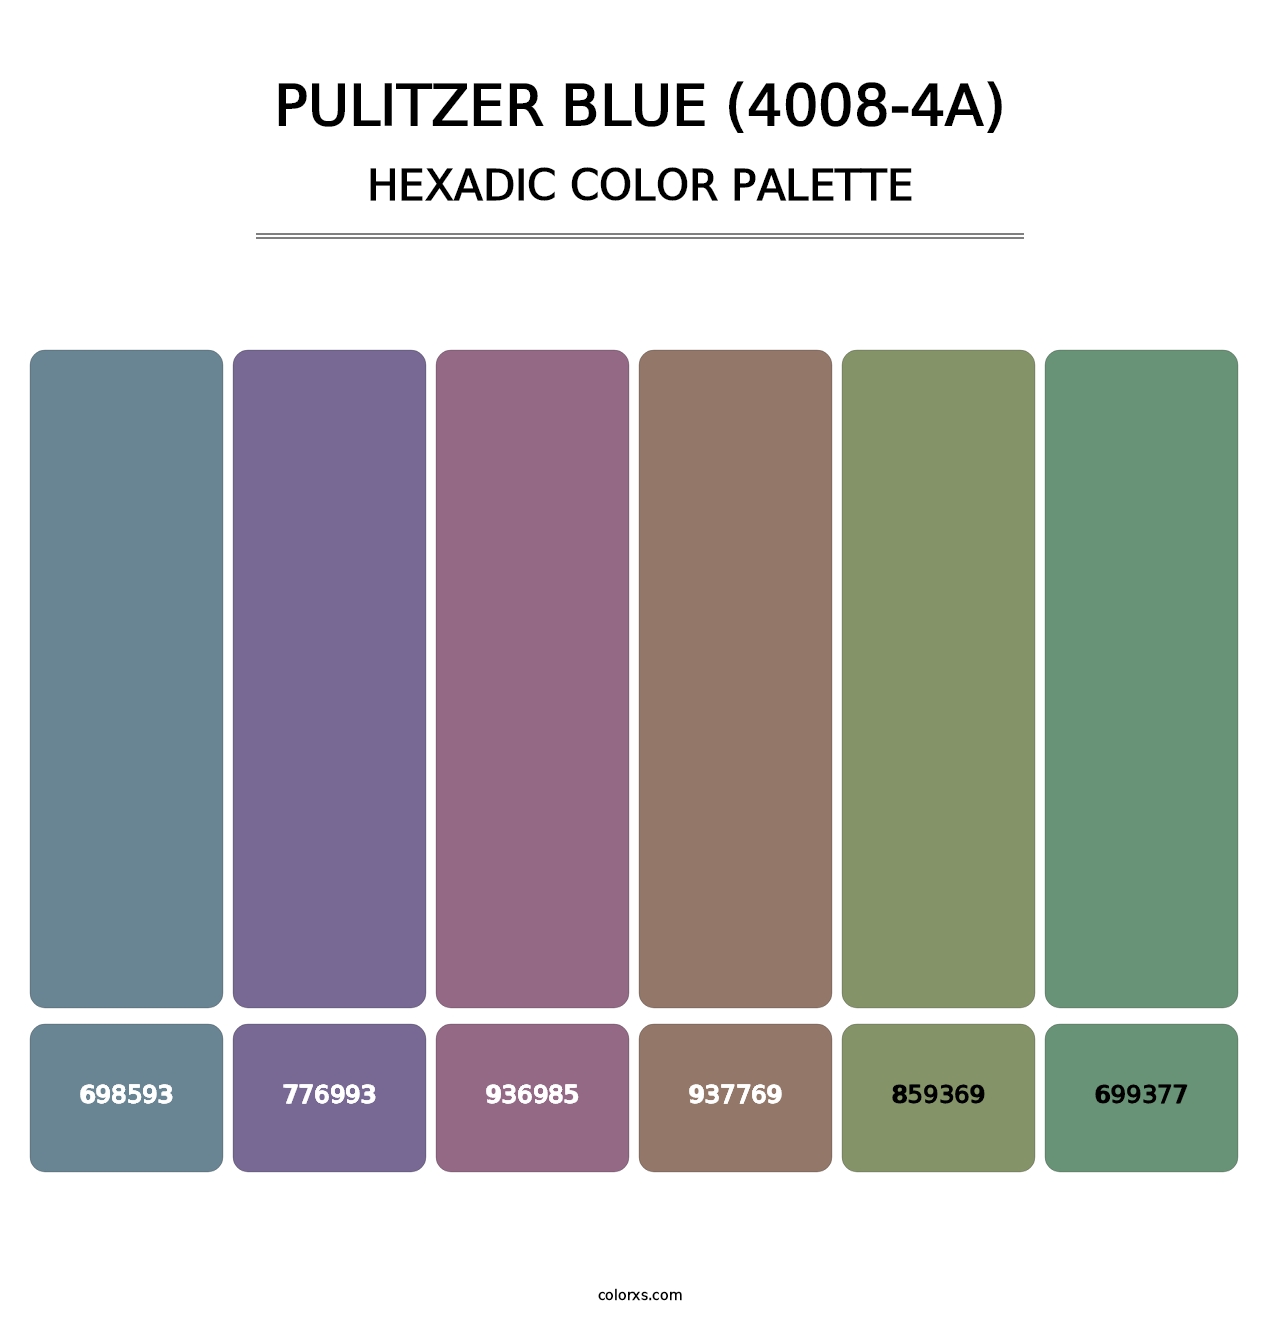 Pulitzer Blue (4008-4A) - Hexadic Color Palette